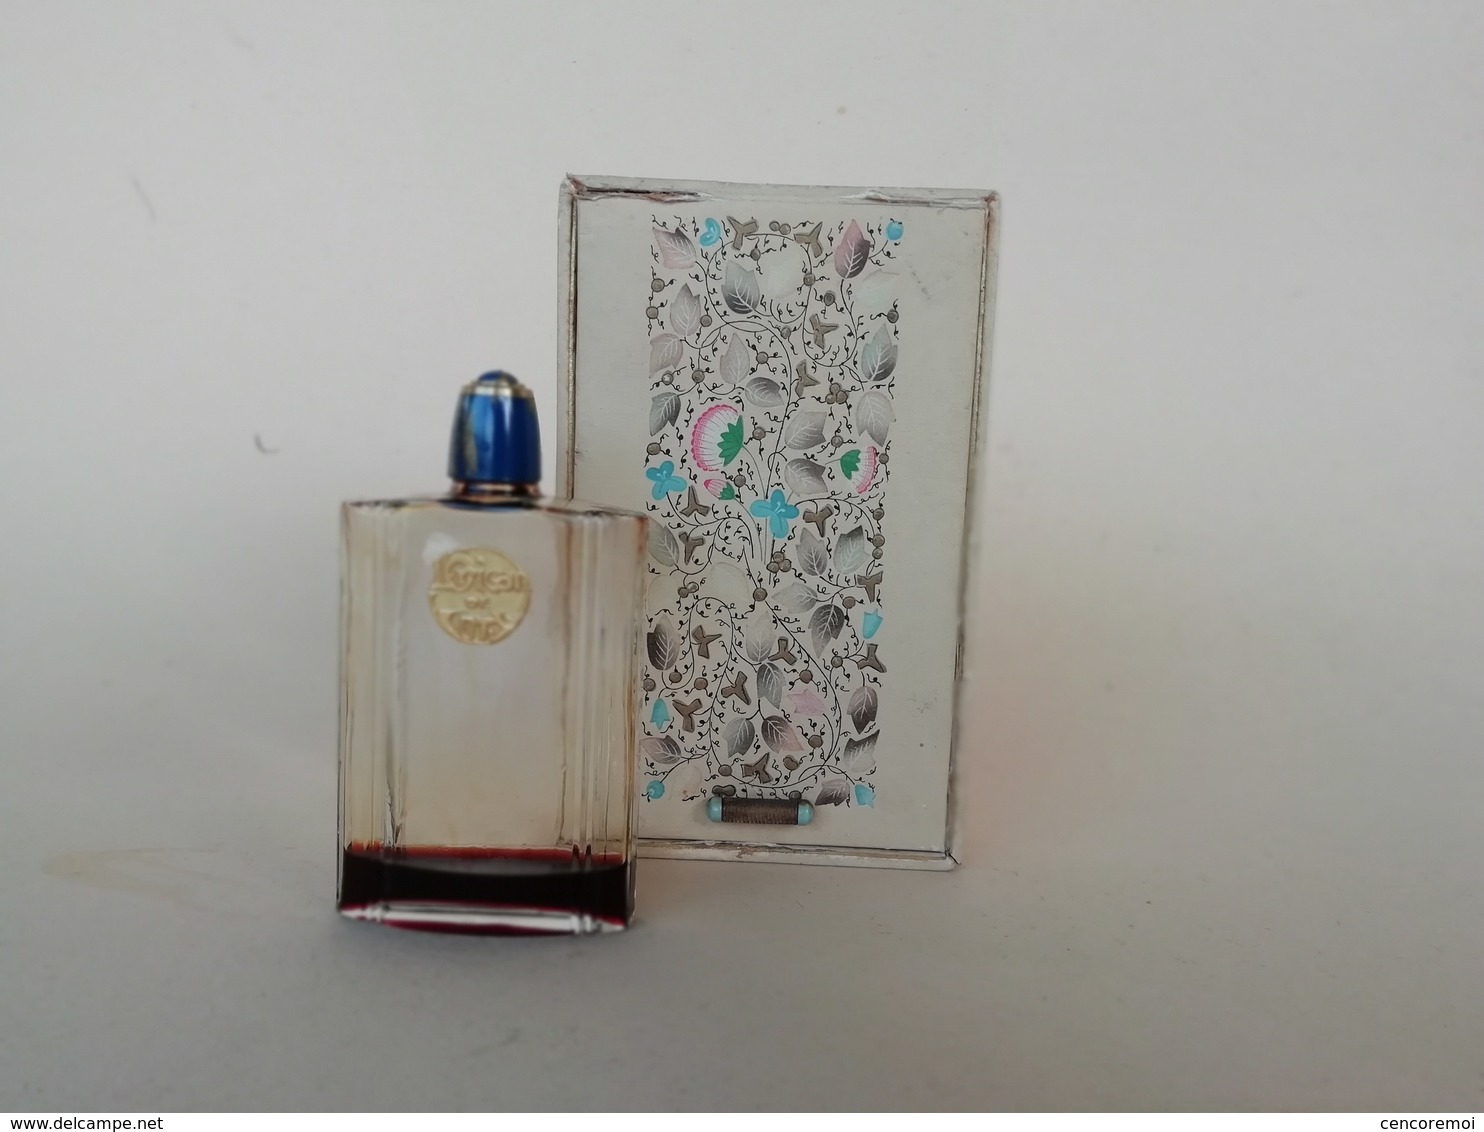 Ancien Flacon à Parfum De Collection Parfumerie Coty, L'Origan Dans Sa Boite D'origine - Flacons (vides)